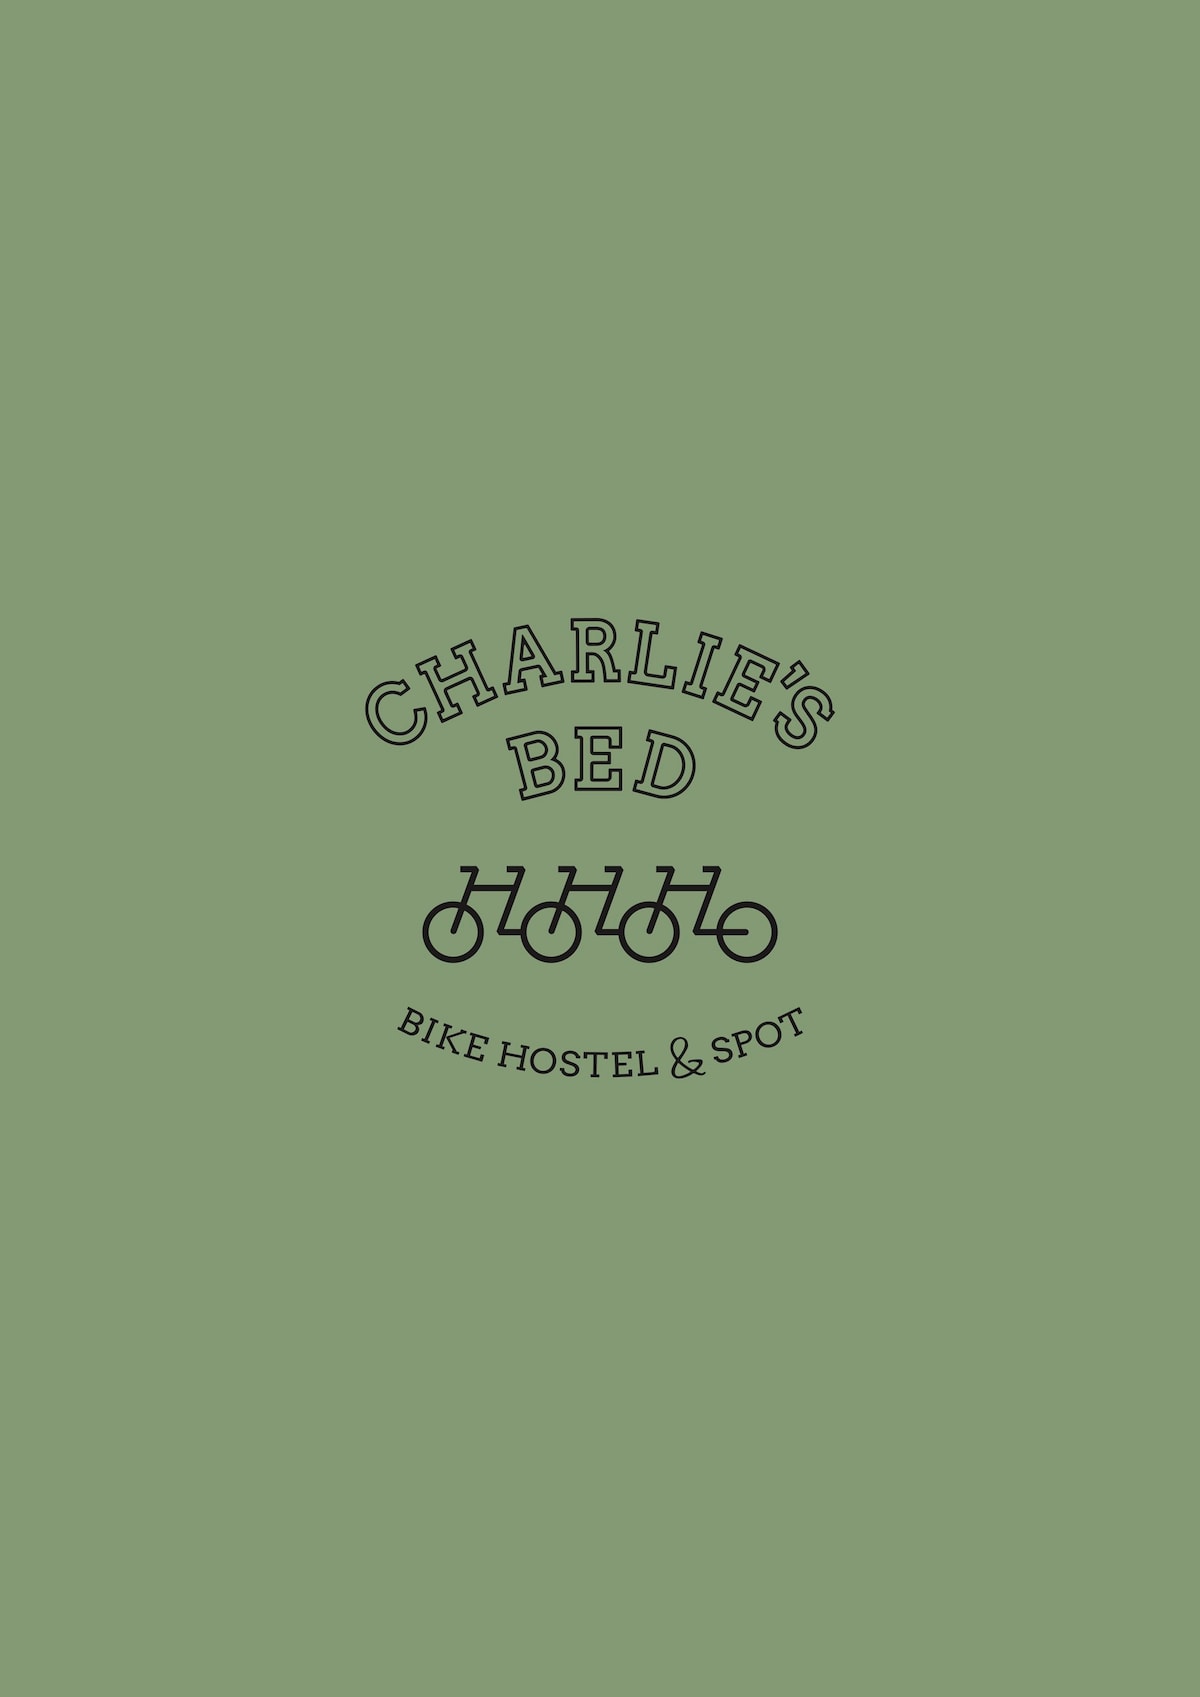 Charlie 's Bed -双人间客自転車室内持ち込み可房